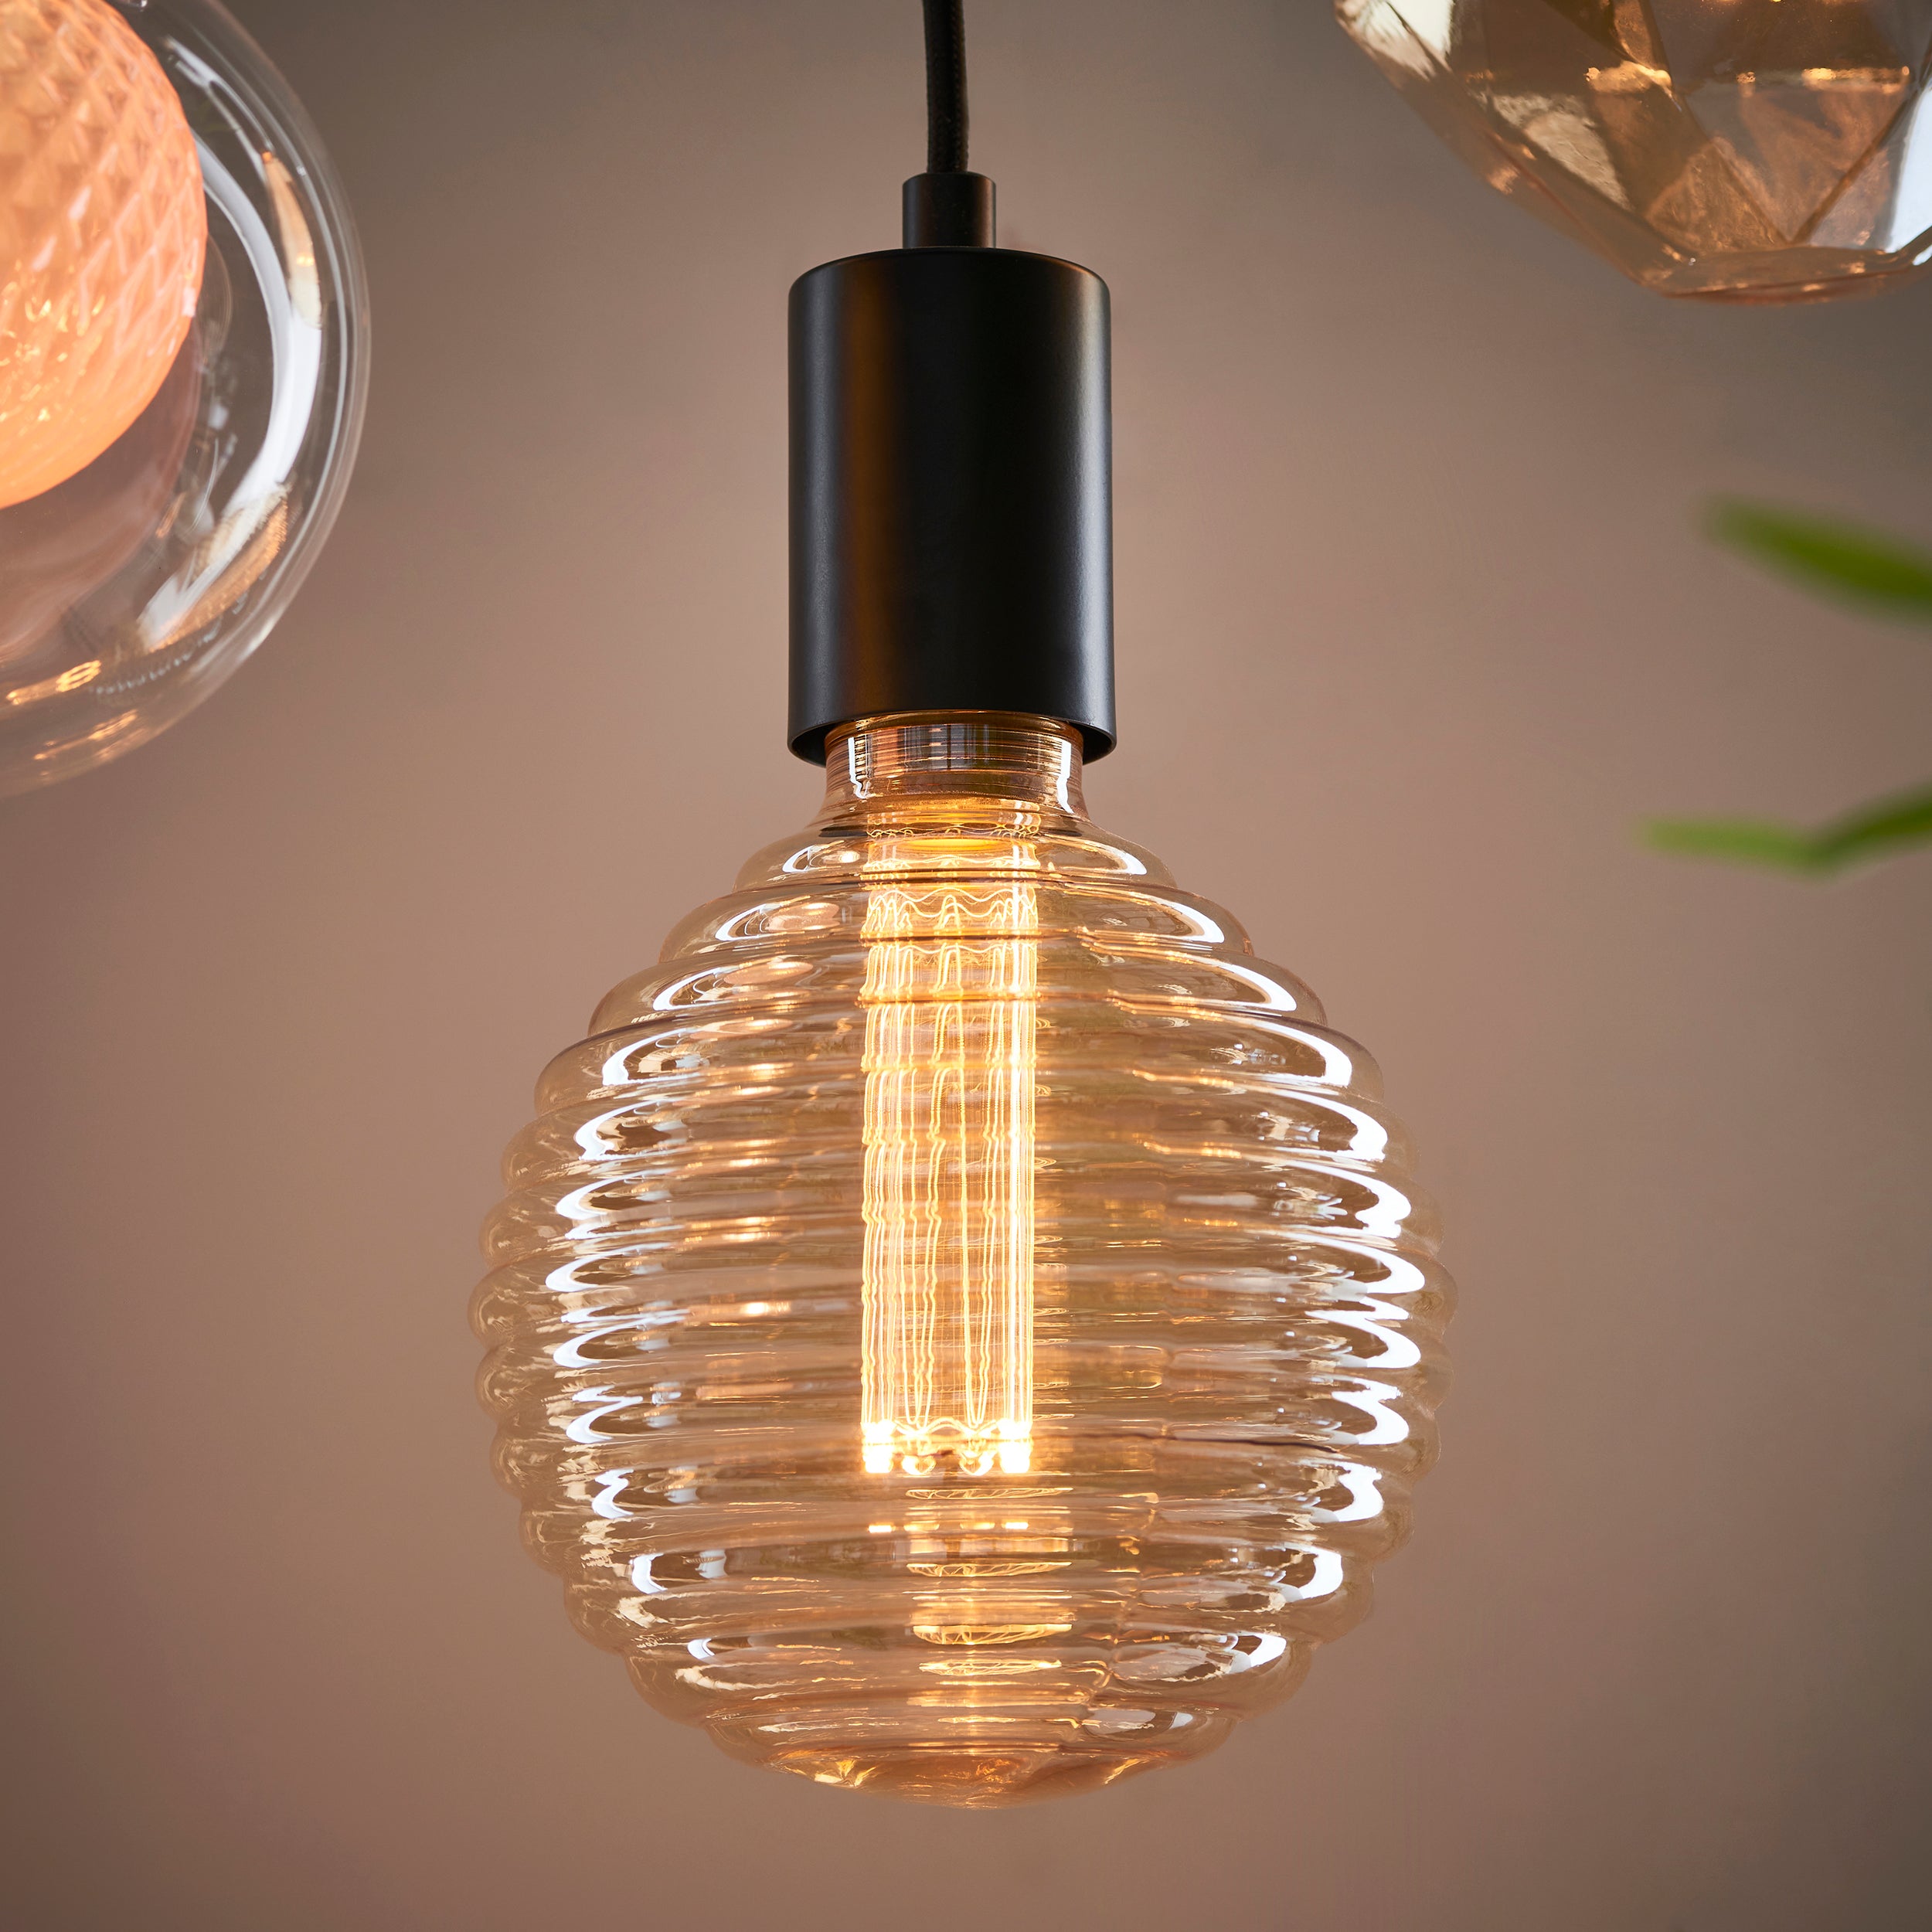 Bienenstock E27 LED-Glühbirne